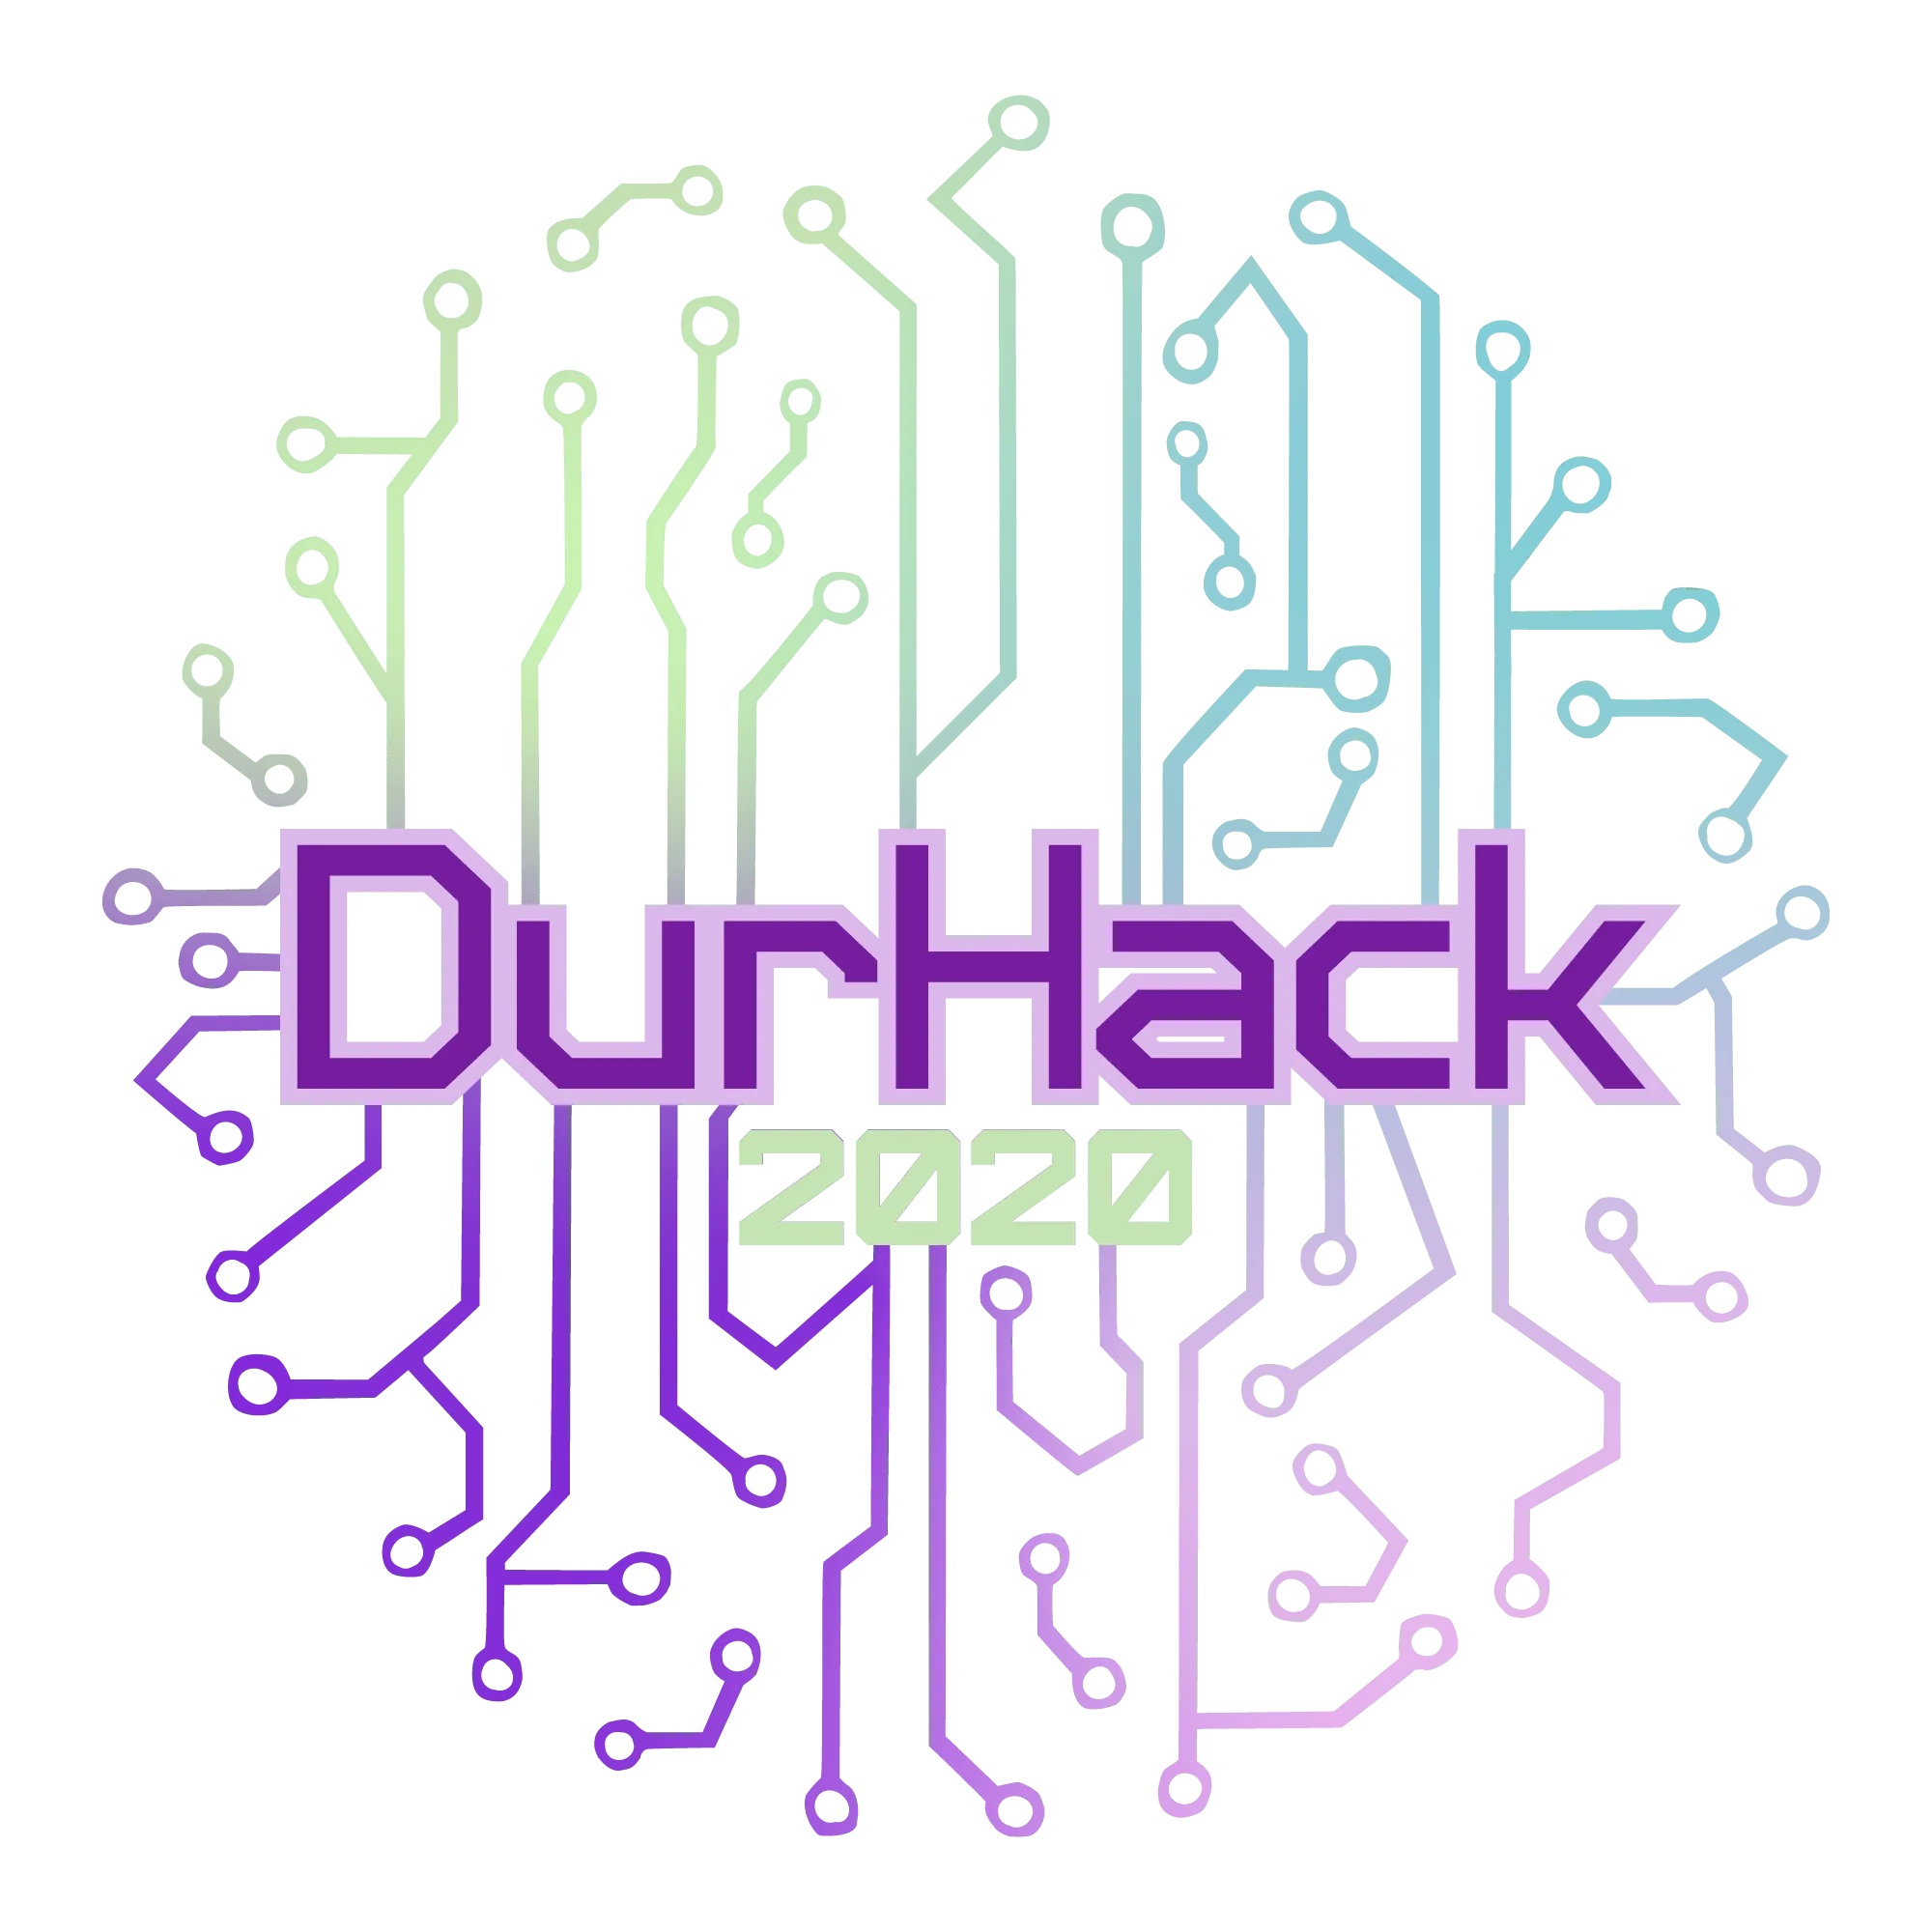 DurHack 2020